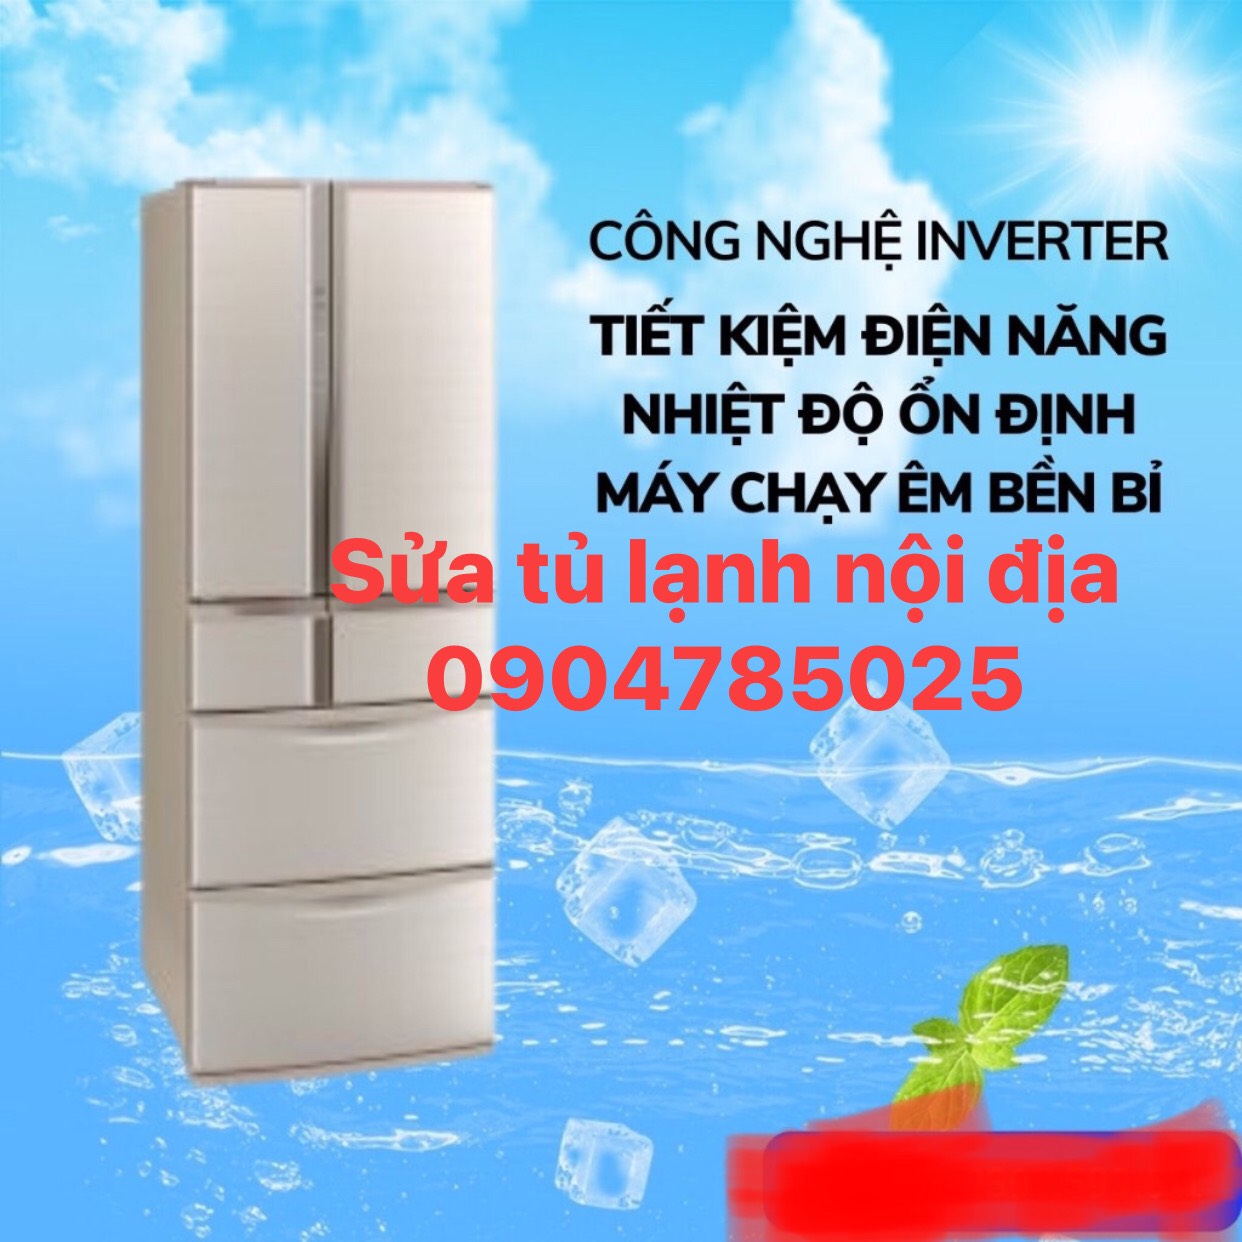 Địa chỉ sửa tủ lạnh nội địa tại nhà Hà Nội 0904785025